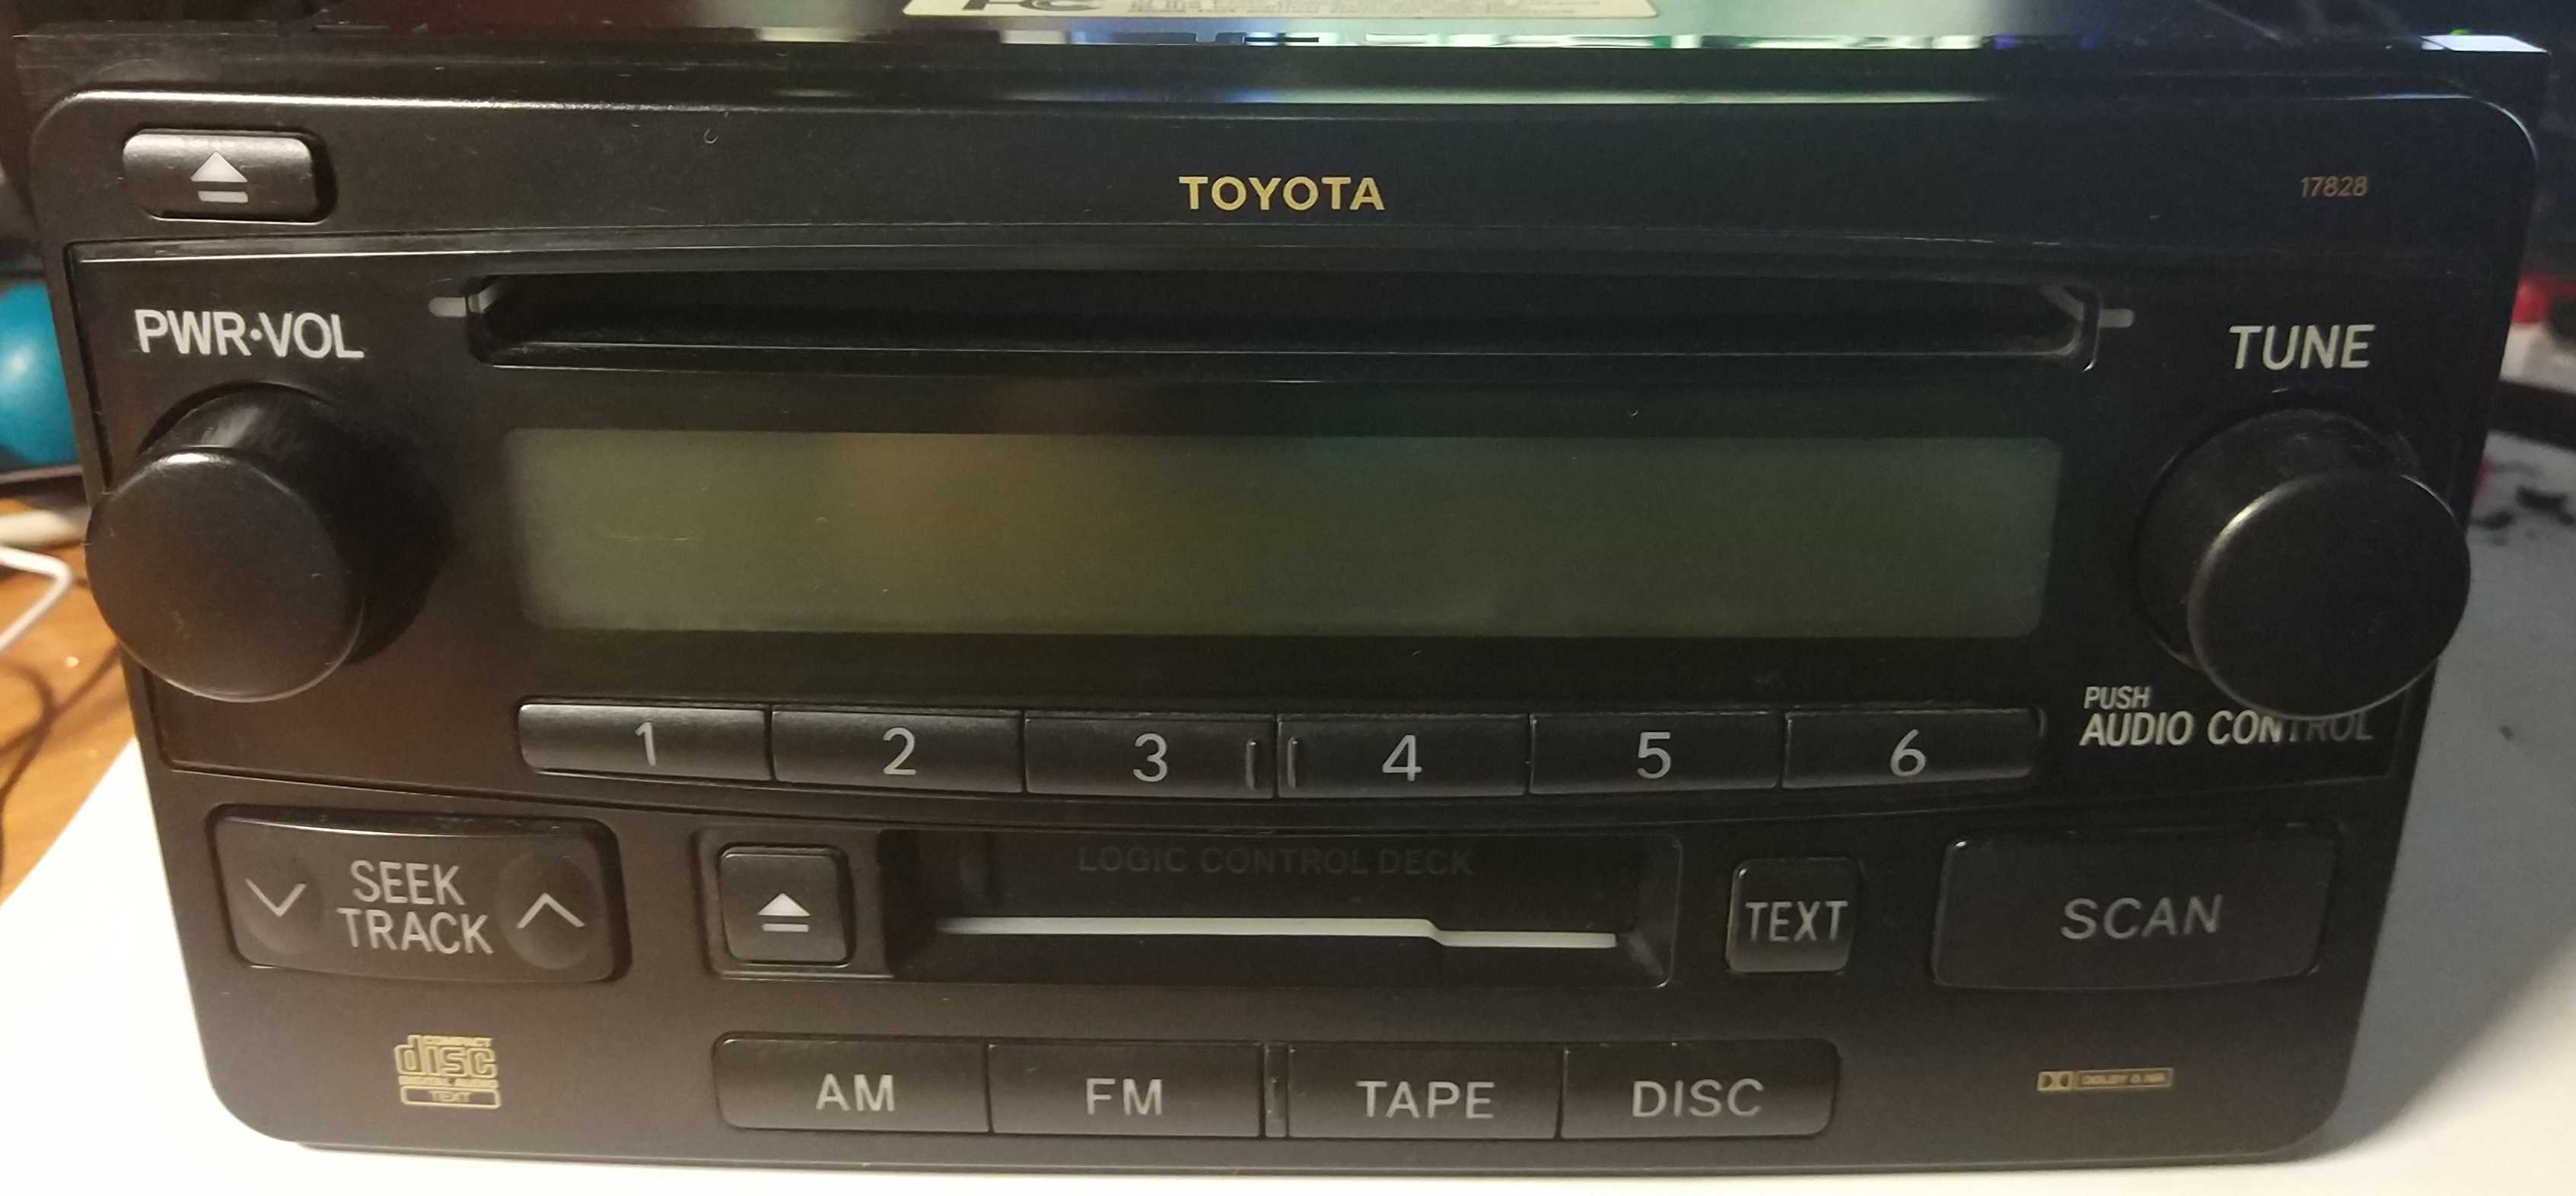 Штатная магнитола Toyota 86120-33700 (Устанавливалась в Toyota Camry ACV30)